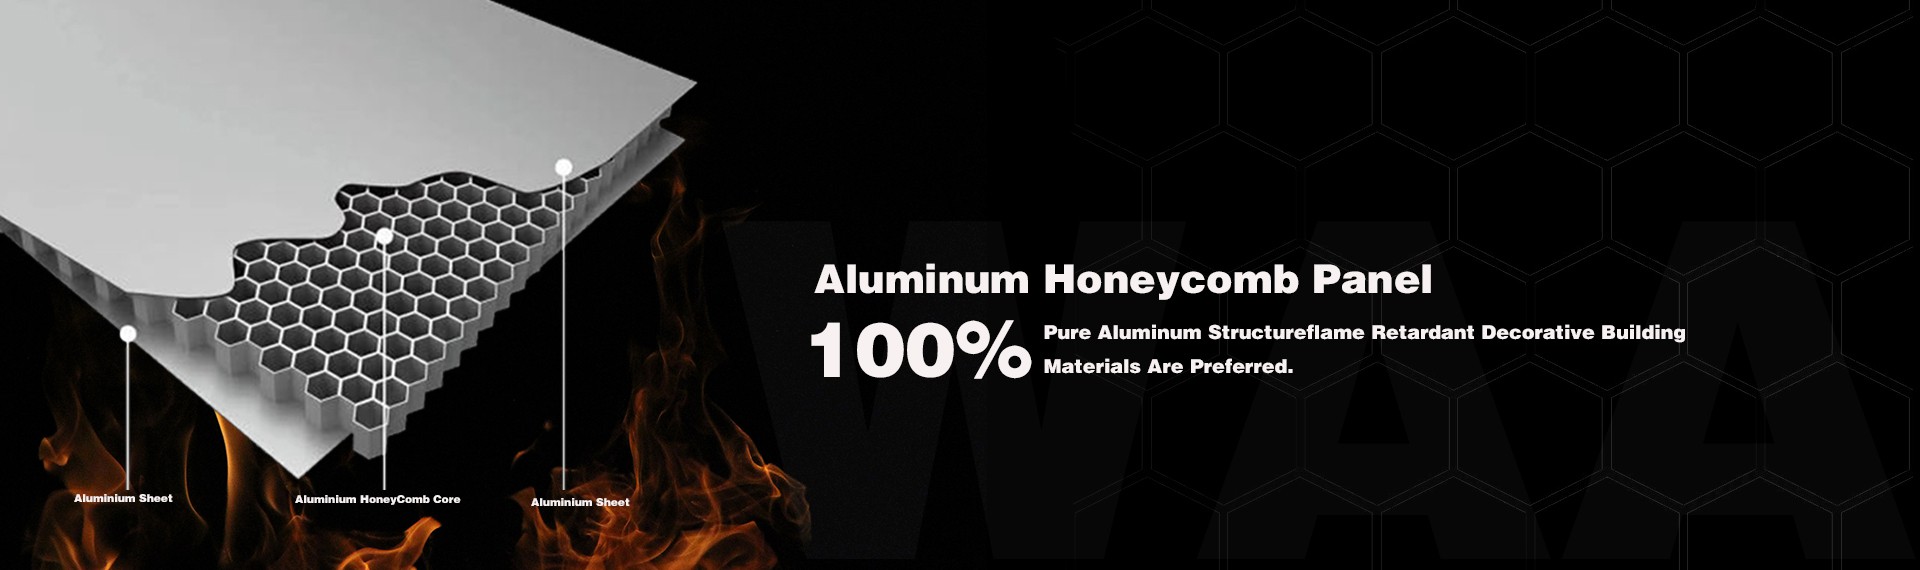 Aluminium Honeycomb Pane Banner